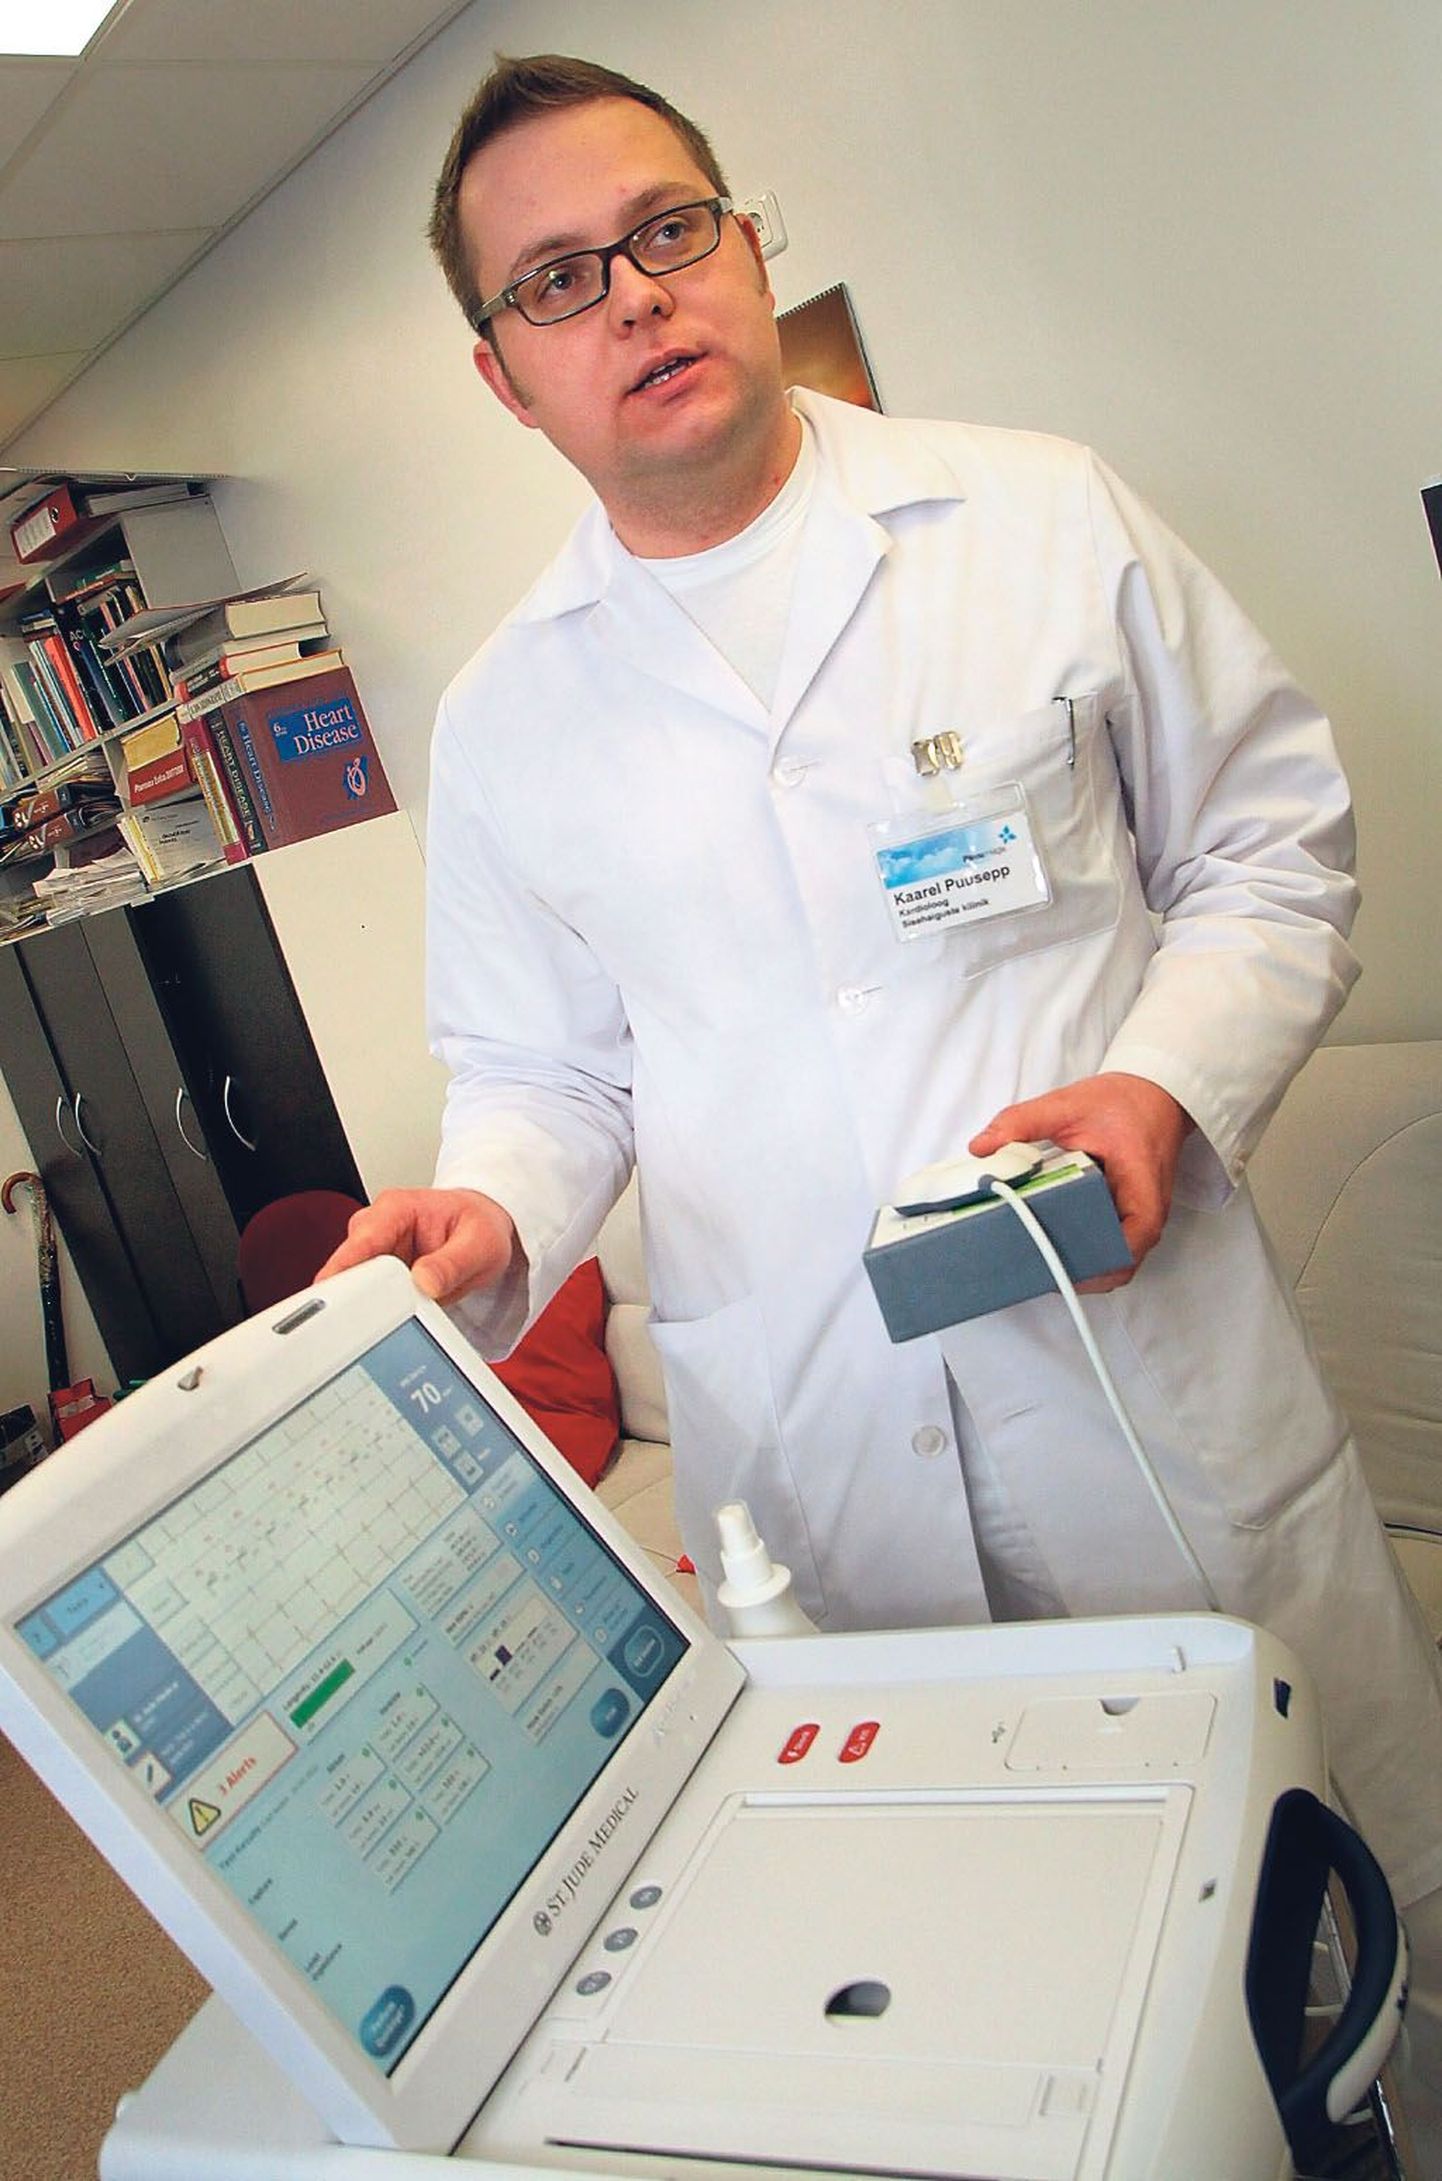 Pärnu haigla kardioloog Kaarel Puusepp mõõdab selle aparaadiga patsientidele pandud tehisrütmuri näitajaid. Südamestimulaatoriga inimesed peavad kontrollis käima poolteise aasta tagant.